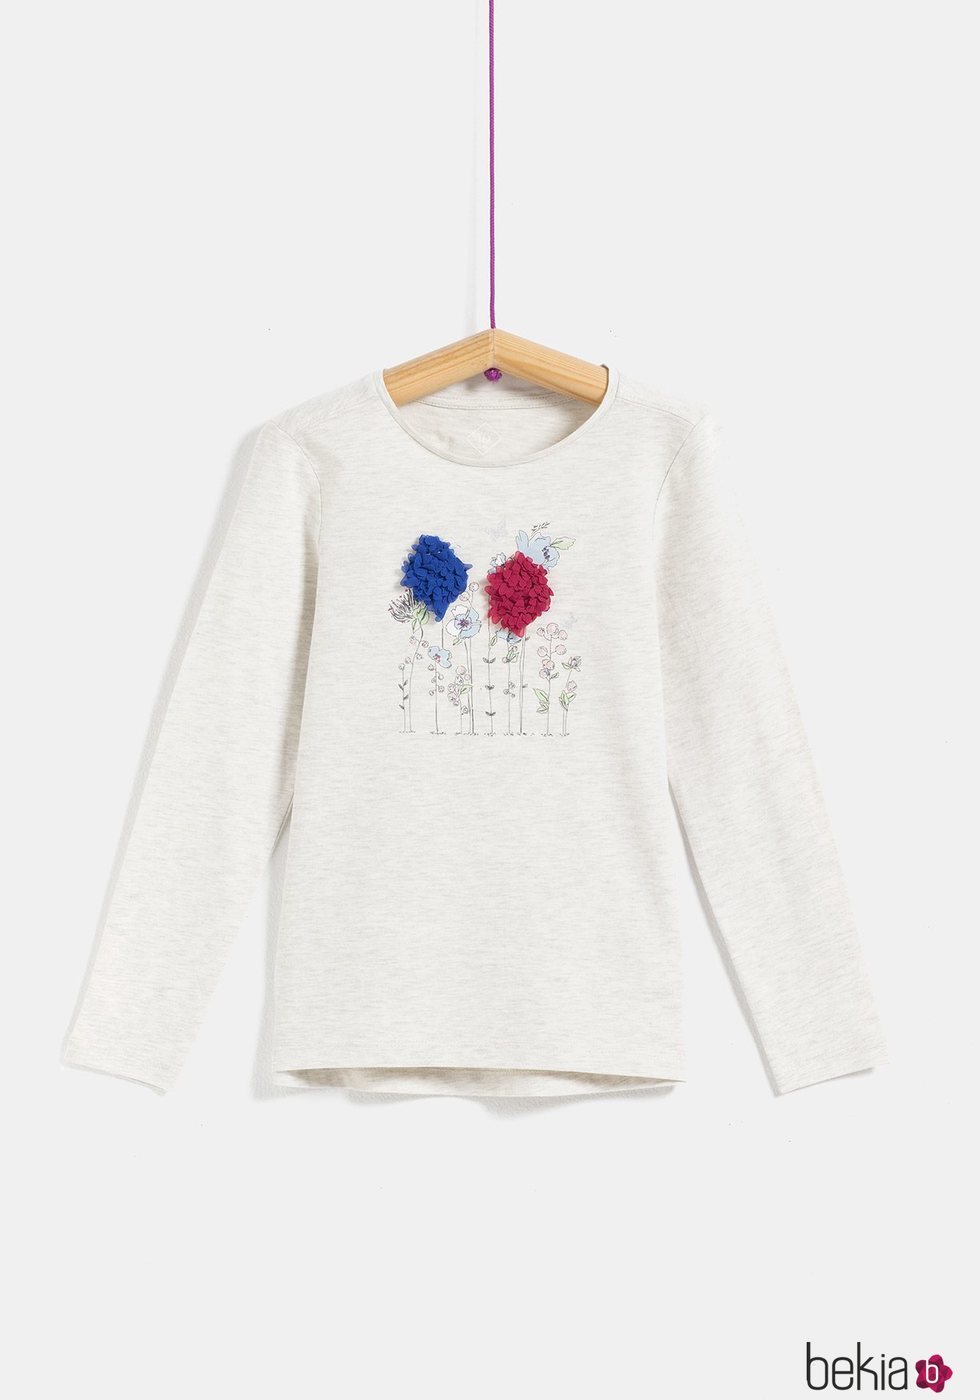 Camiseta blanca con flores para niña de la colección 'I-O' de Carrefour y TEX para otoño/invierno 2019